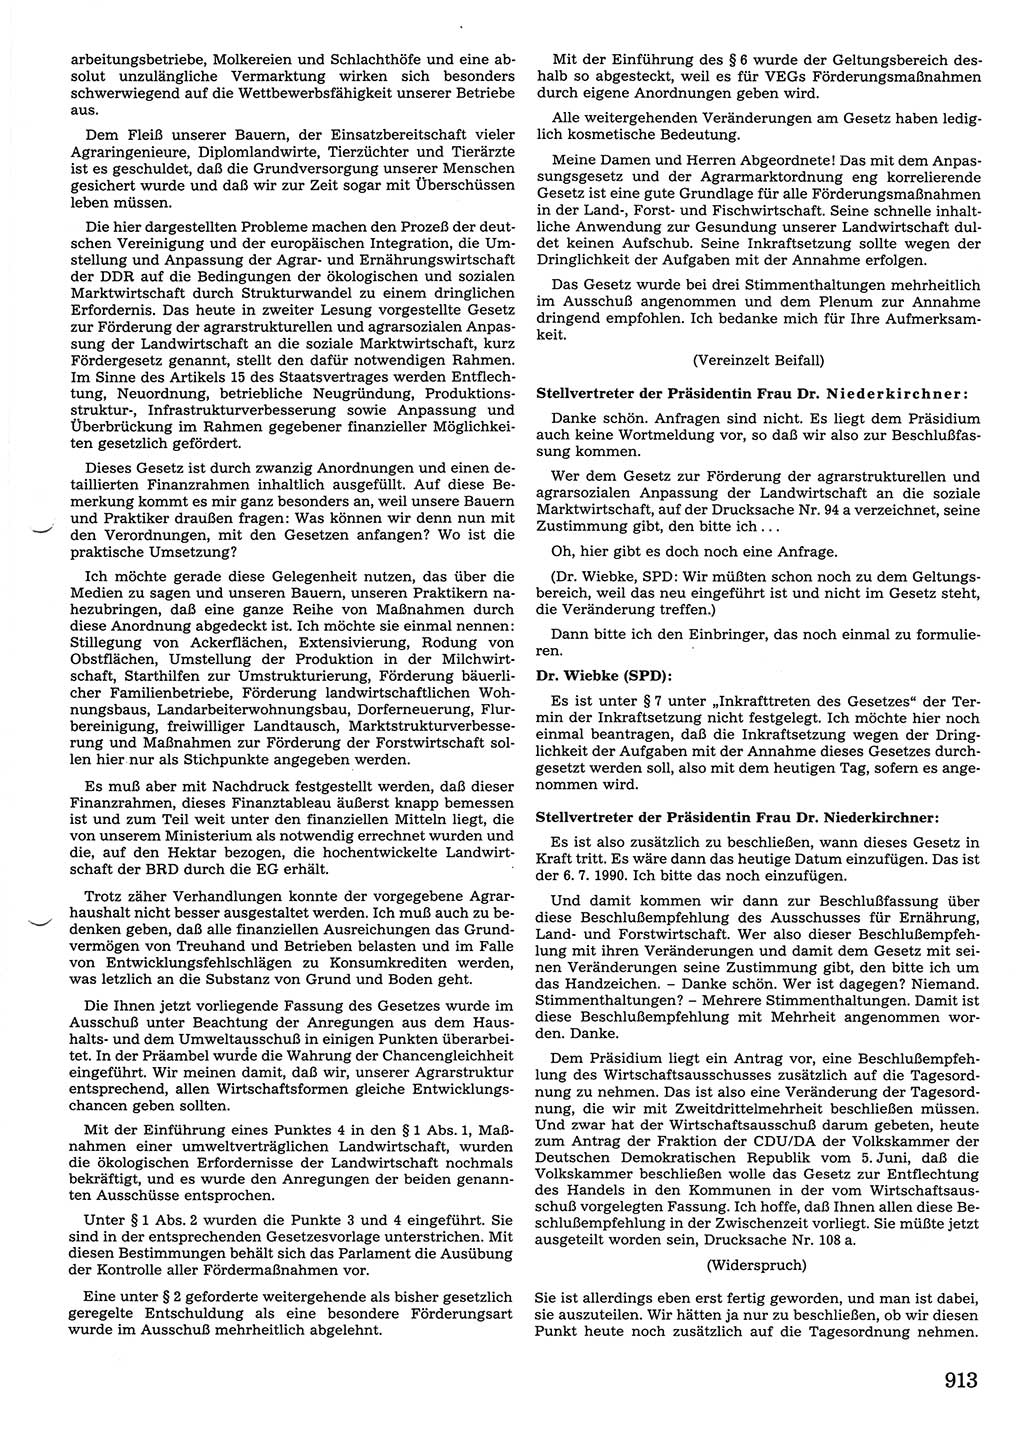 Tagungen der Volkskammer (VK) der Deutschen Demokratischen Republik (DDR), 10. Wahlperiode 1990, Seite 913 (VK. DDR 10. WP. 1990, Prot. Tg. 1-38, 5.4.-2.10.1990, S. 913)